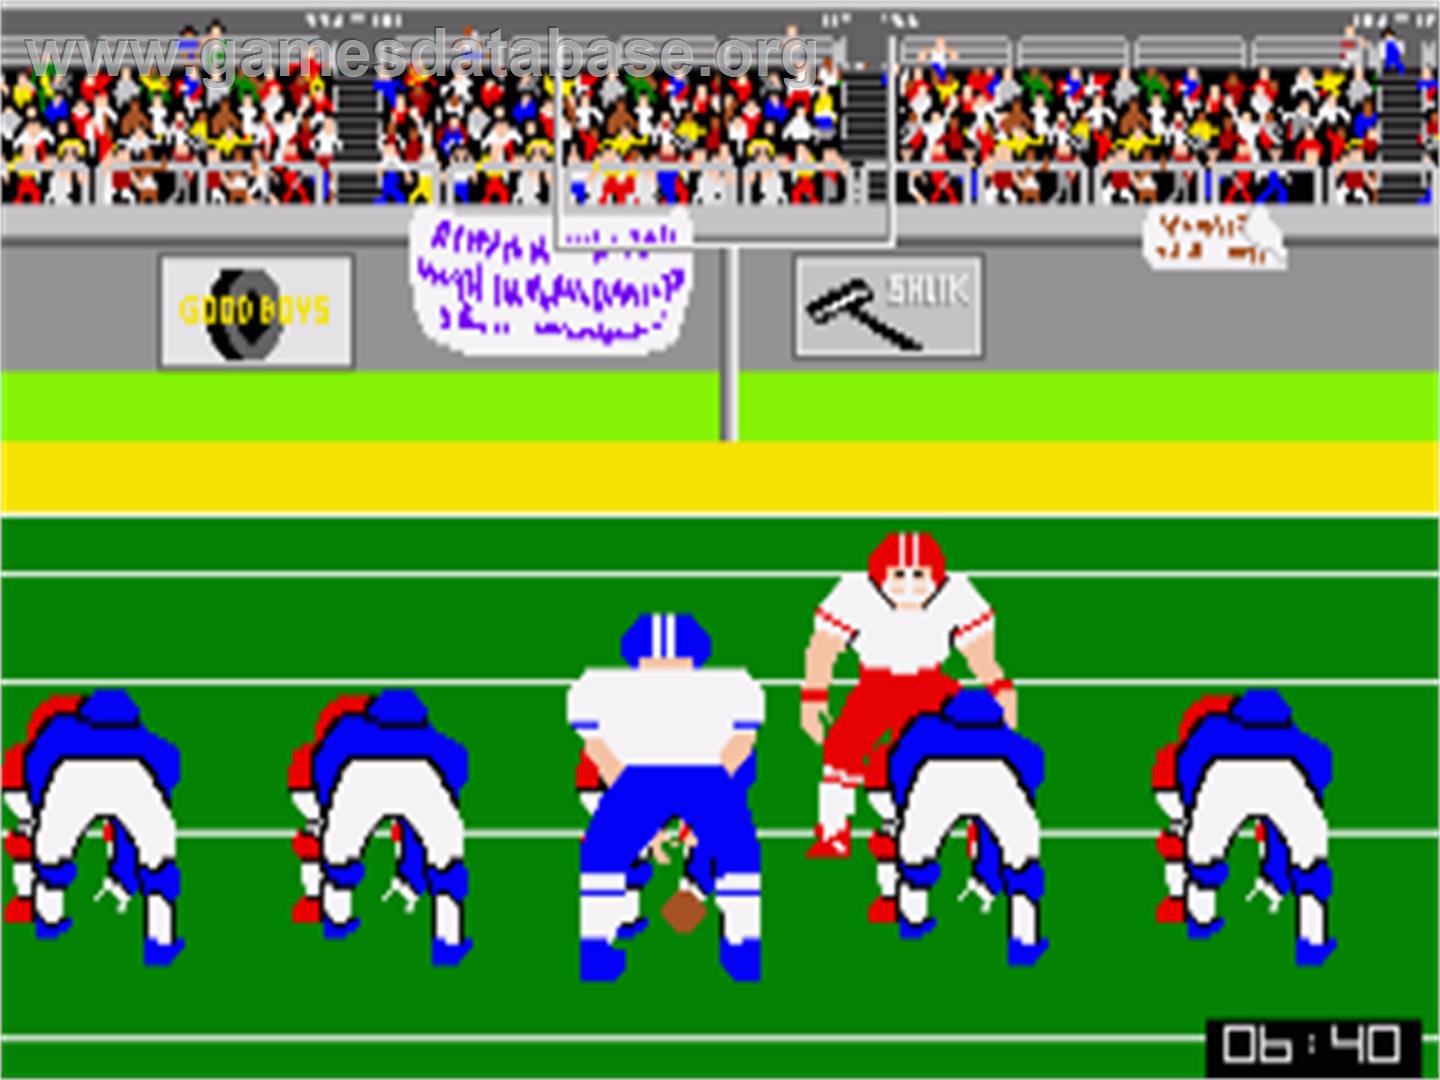 GFL Championship Football - Commodore Amiga - Artwork - In Game